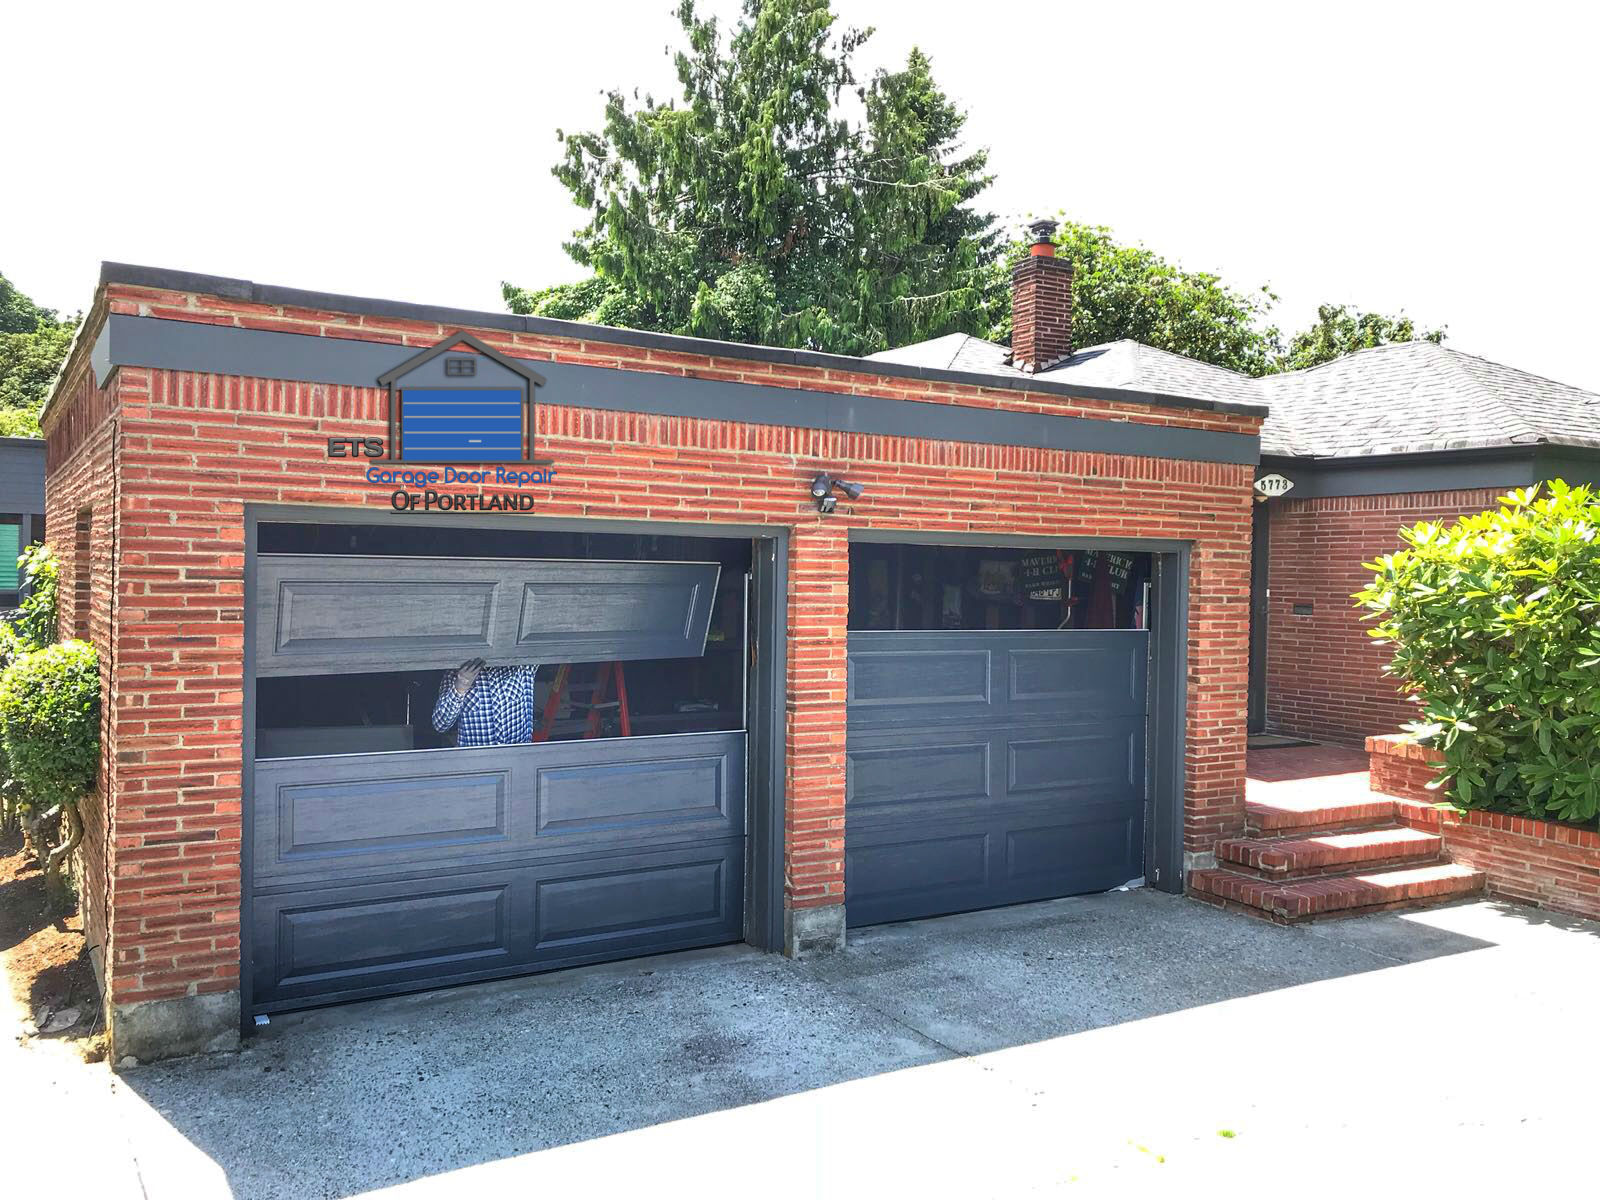 Image Name ETS Garage Door Repair Of Eugene- Garage Door Repair & Installation Services10